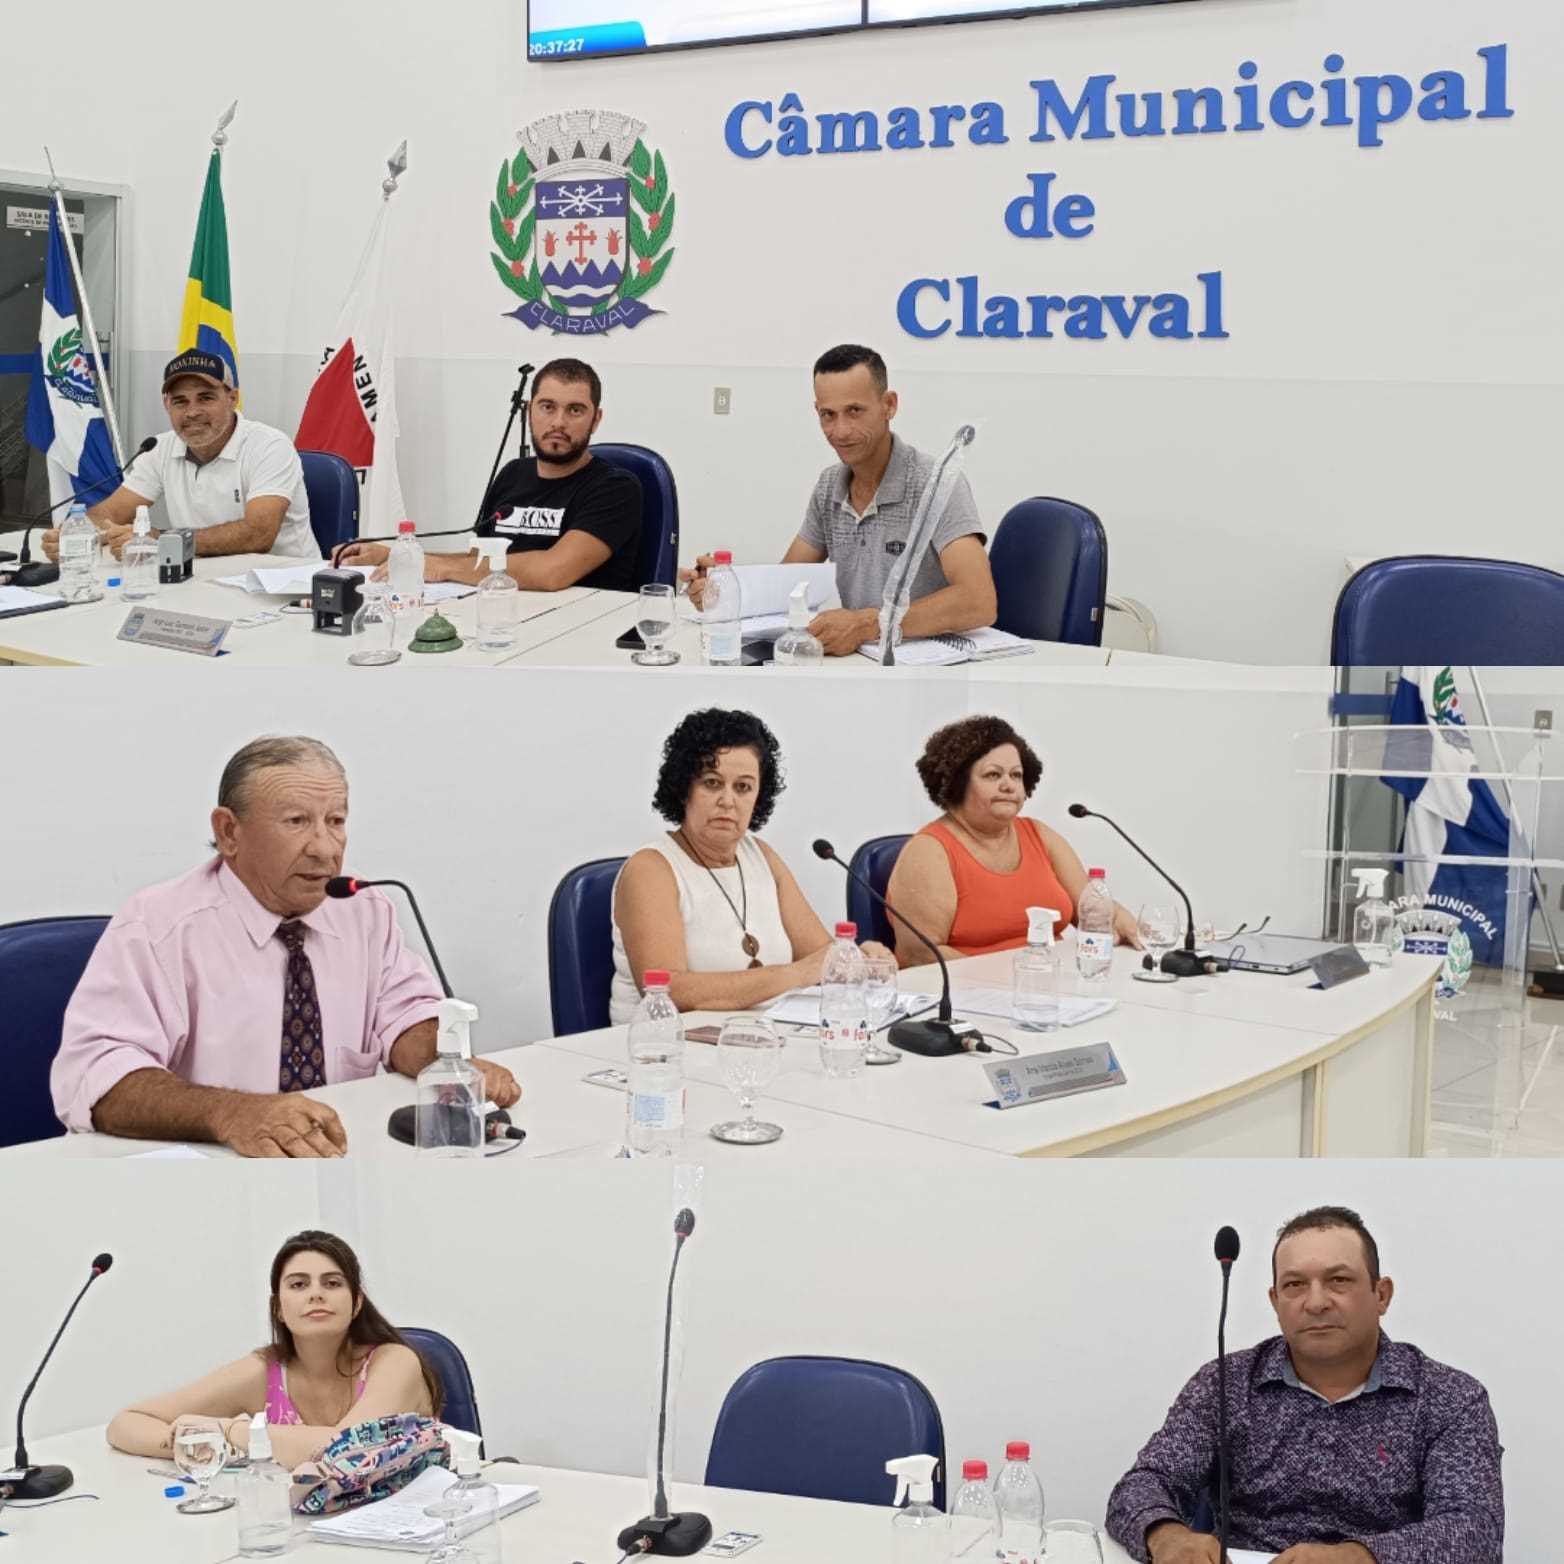 Câmara Municipal de Claraval - Principal